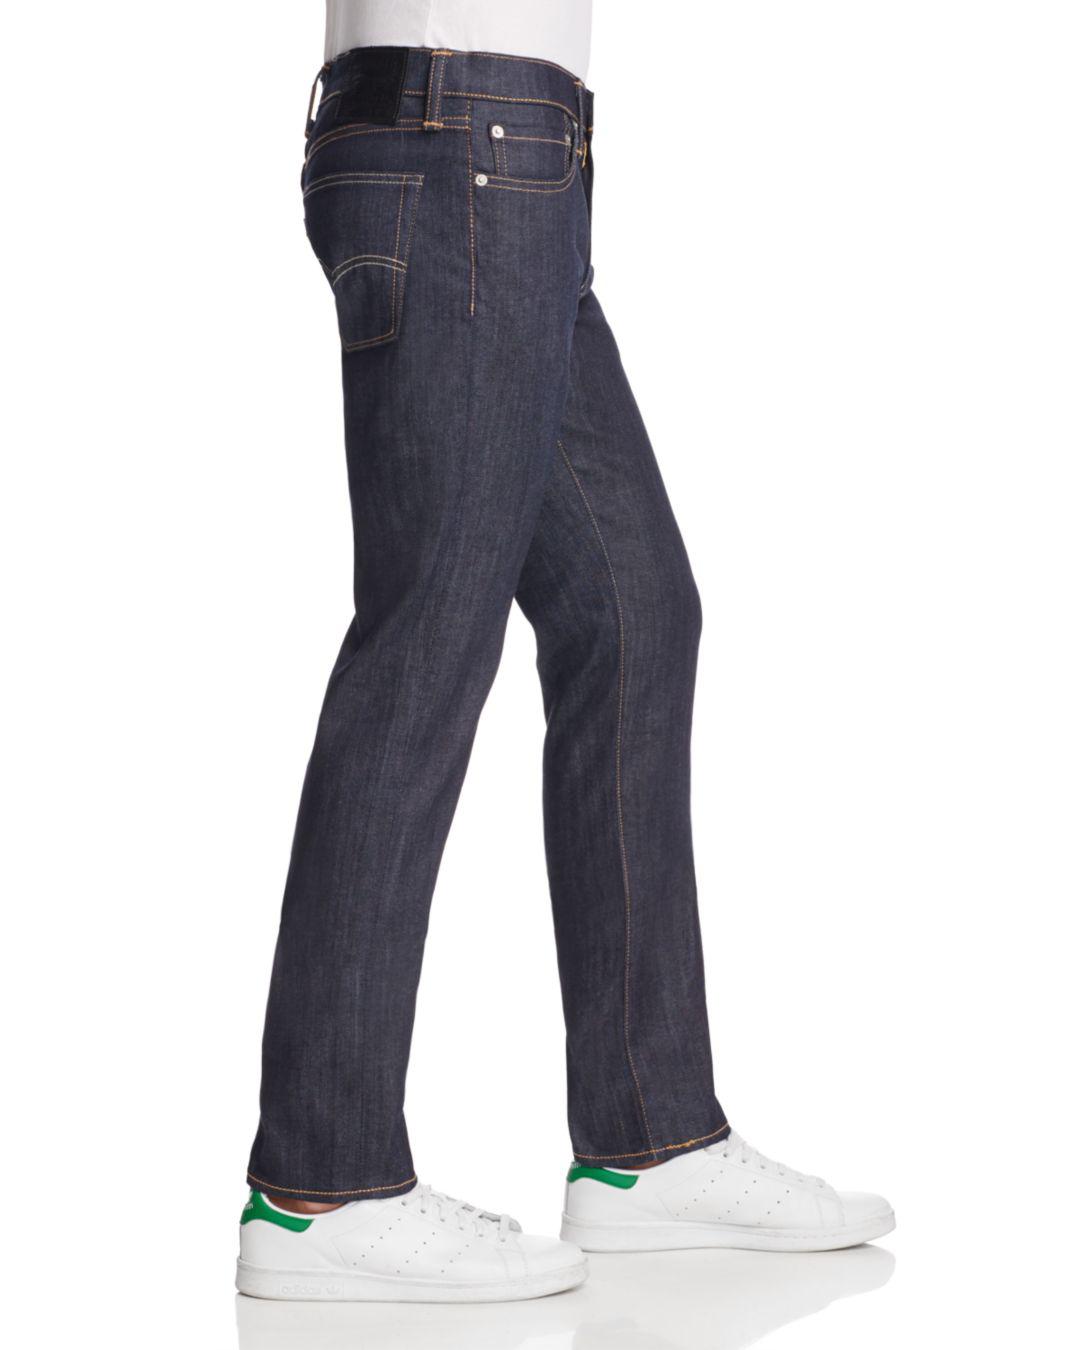 Levi's Denim Levis 511 Slim Fit Jeans 